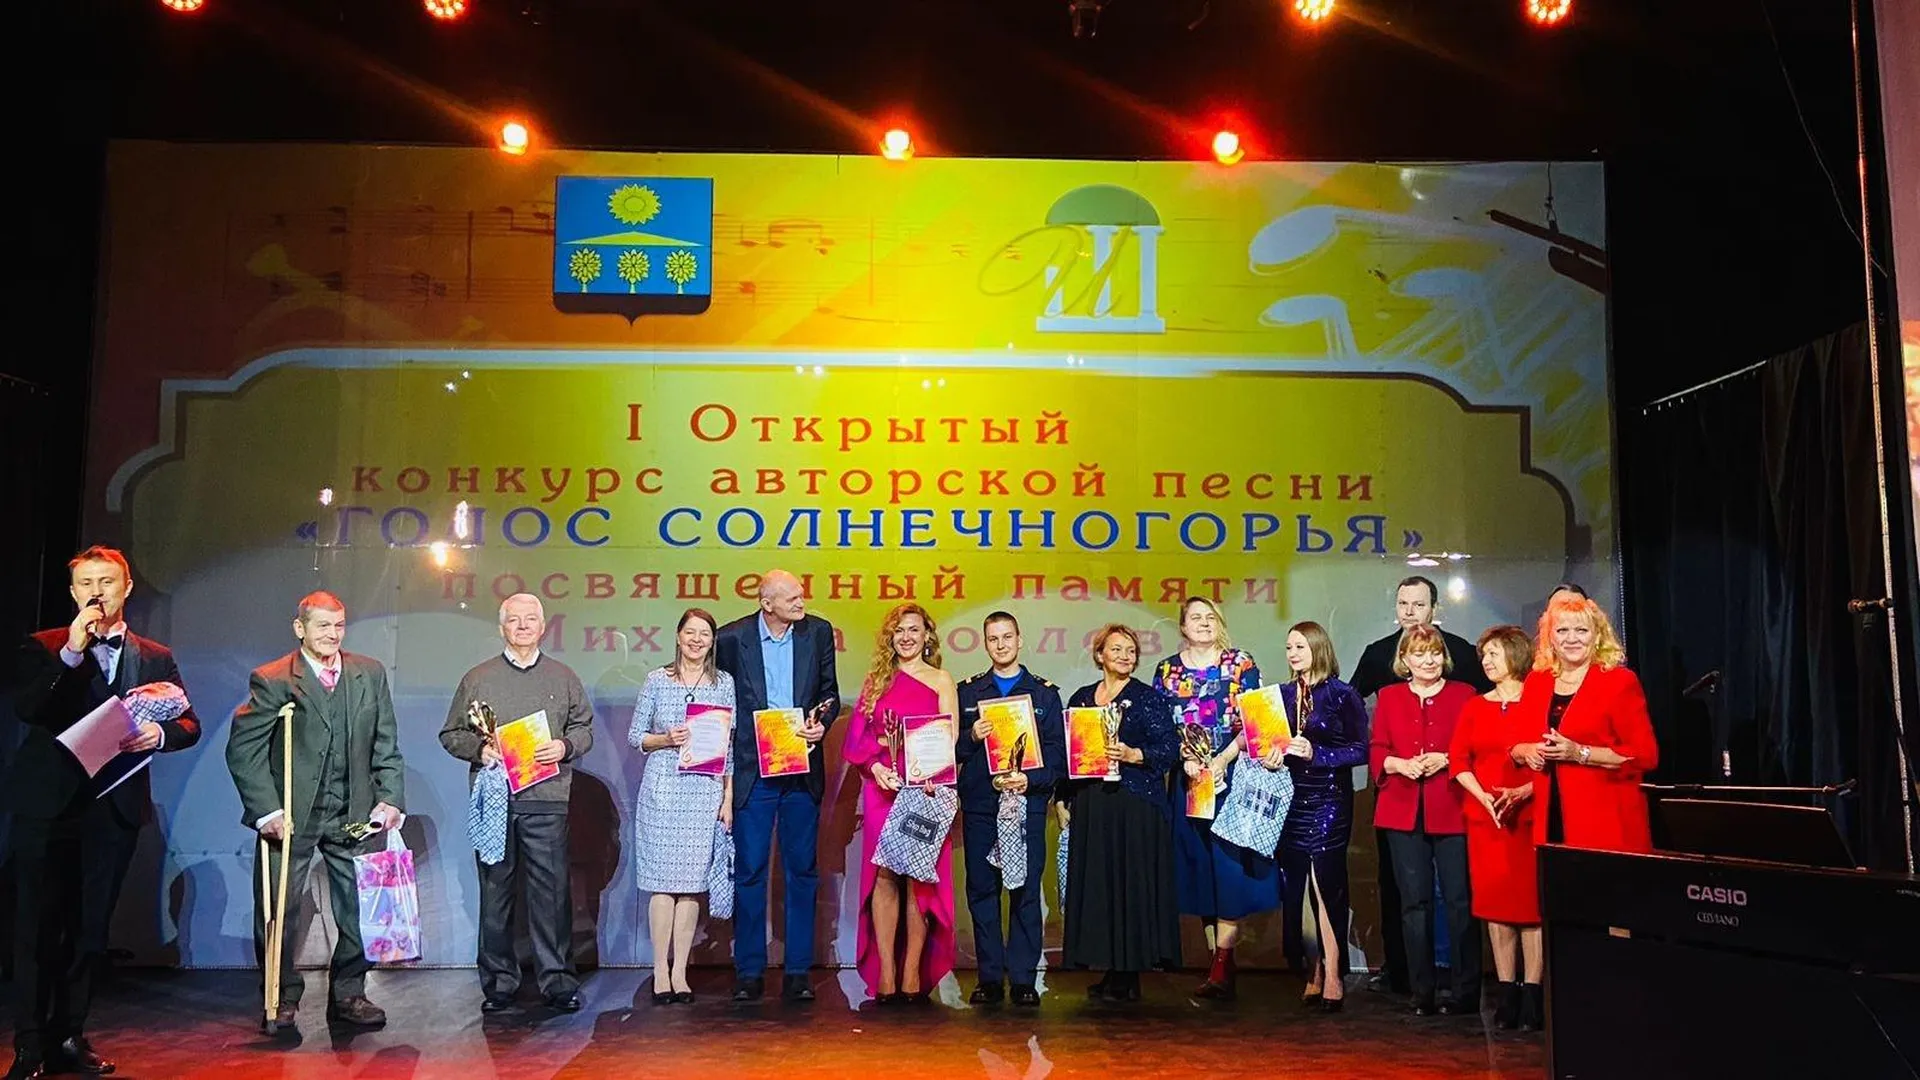 Конкурс авторской песни прошел в Доме культуры «Испытатель» в Солнечногорске